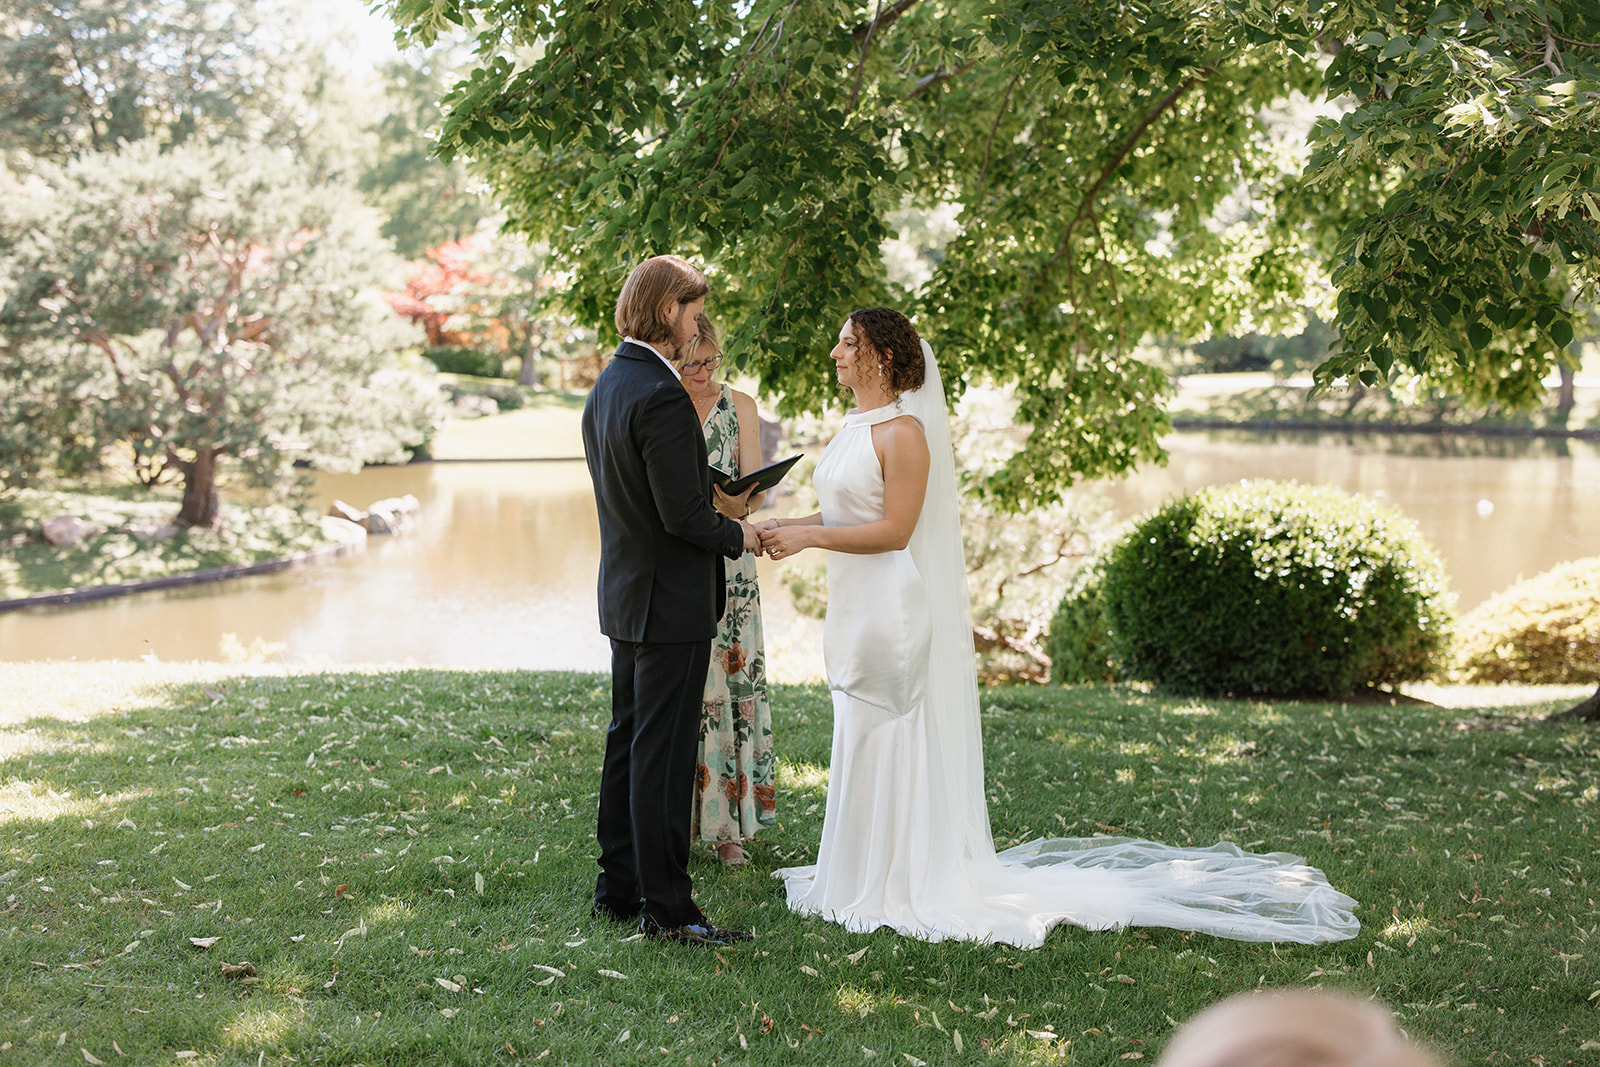 Couple during wedding ceremony at Missouri Botanical Gardens